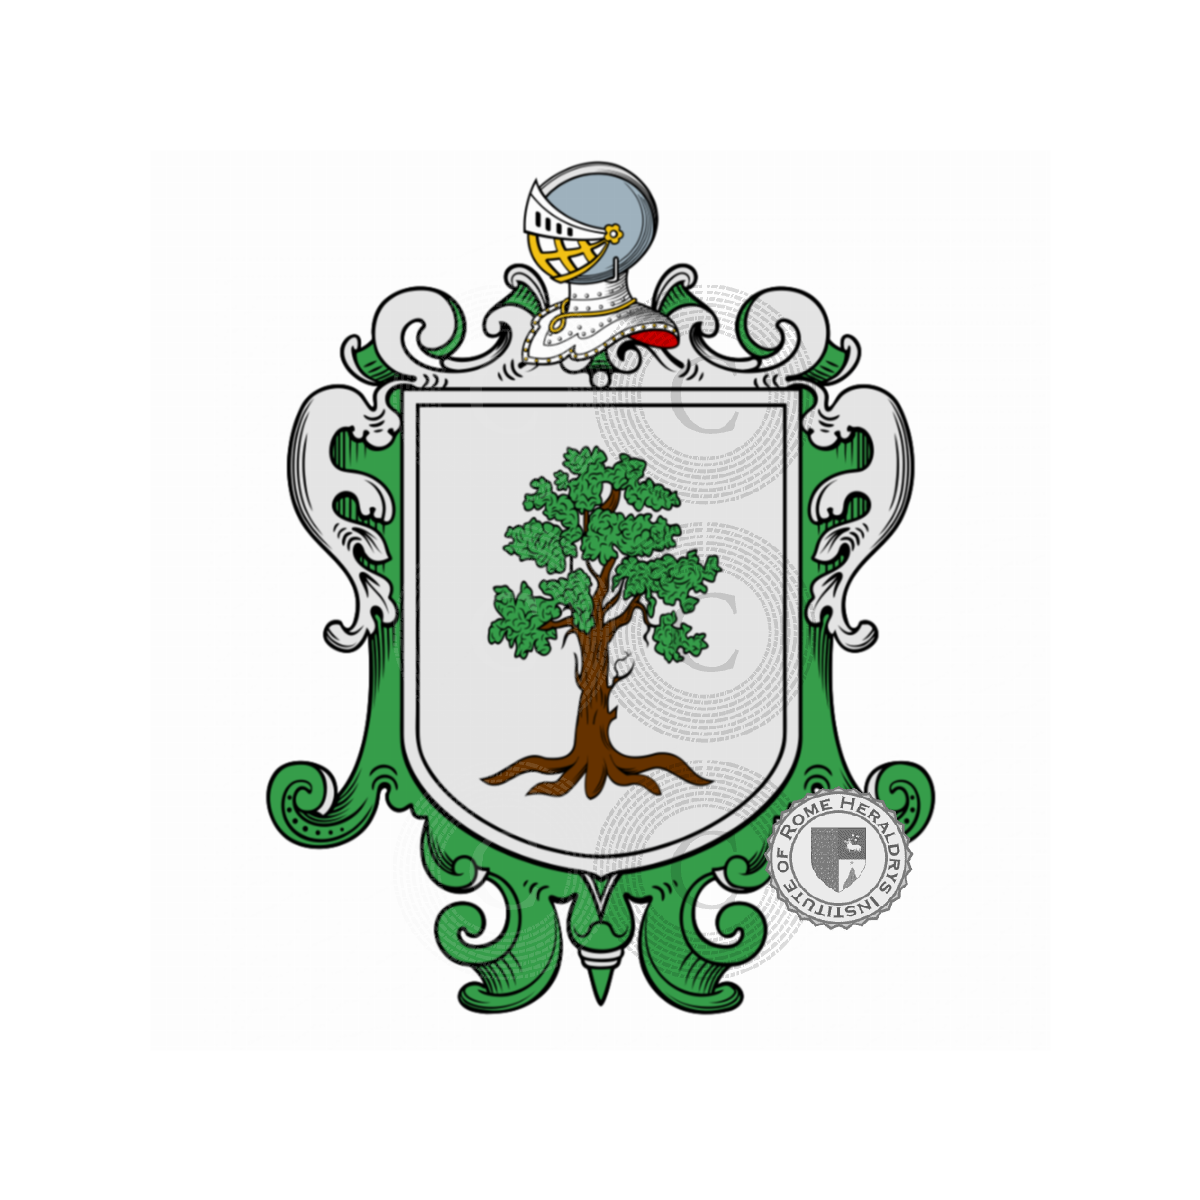 Wappen der FamilieDini, di Dino,Dini Becchi,Dini Correggiai,Dini da Colle,Dini da Vicchio,Dini Spezzali